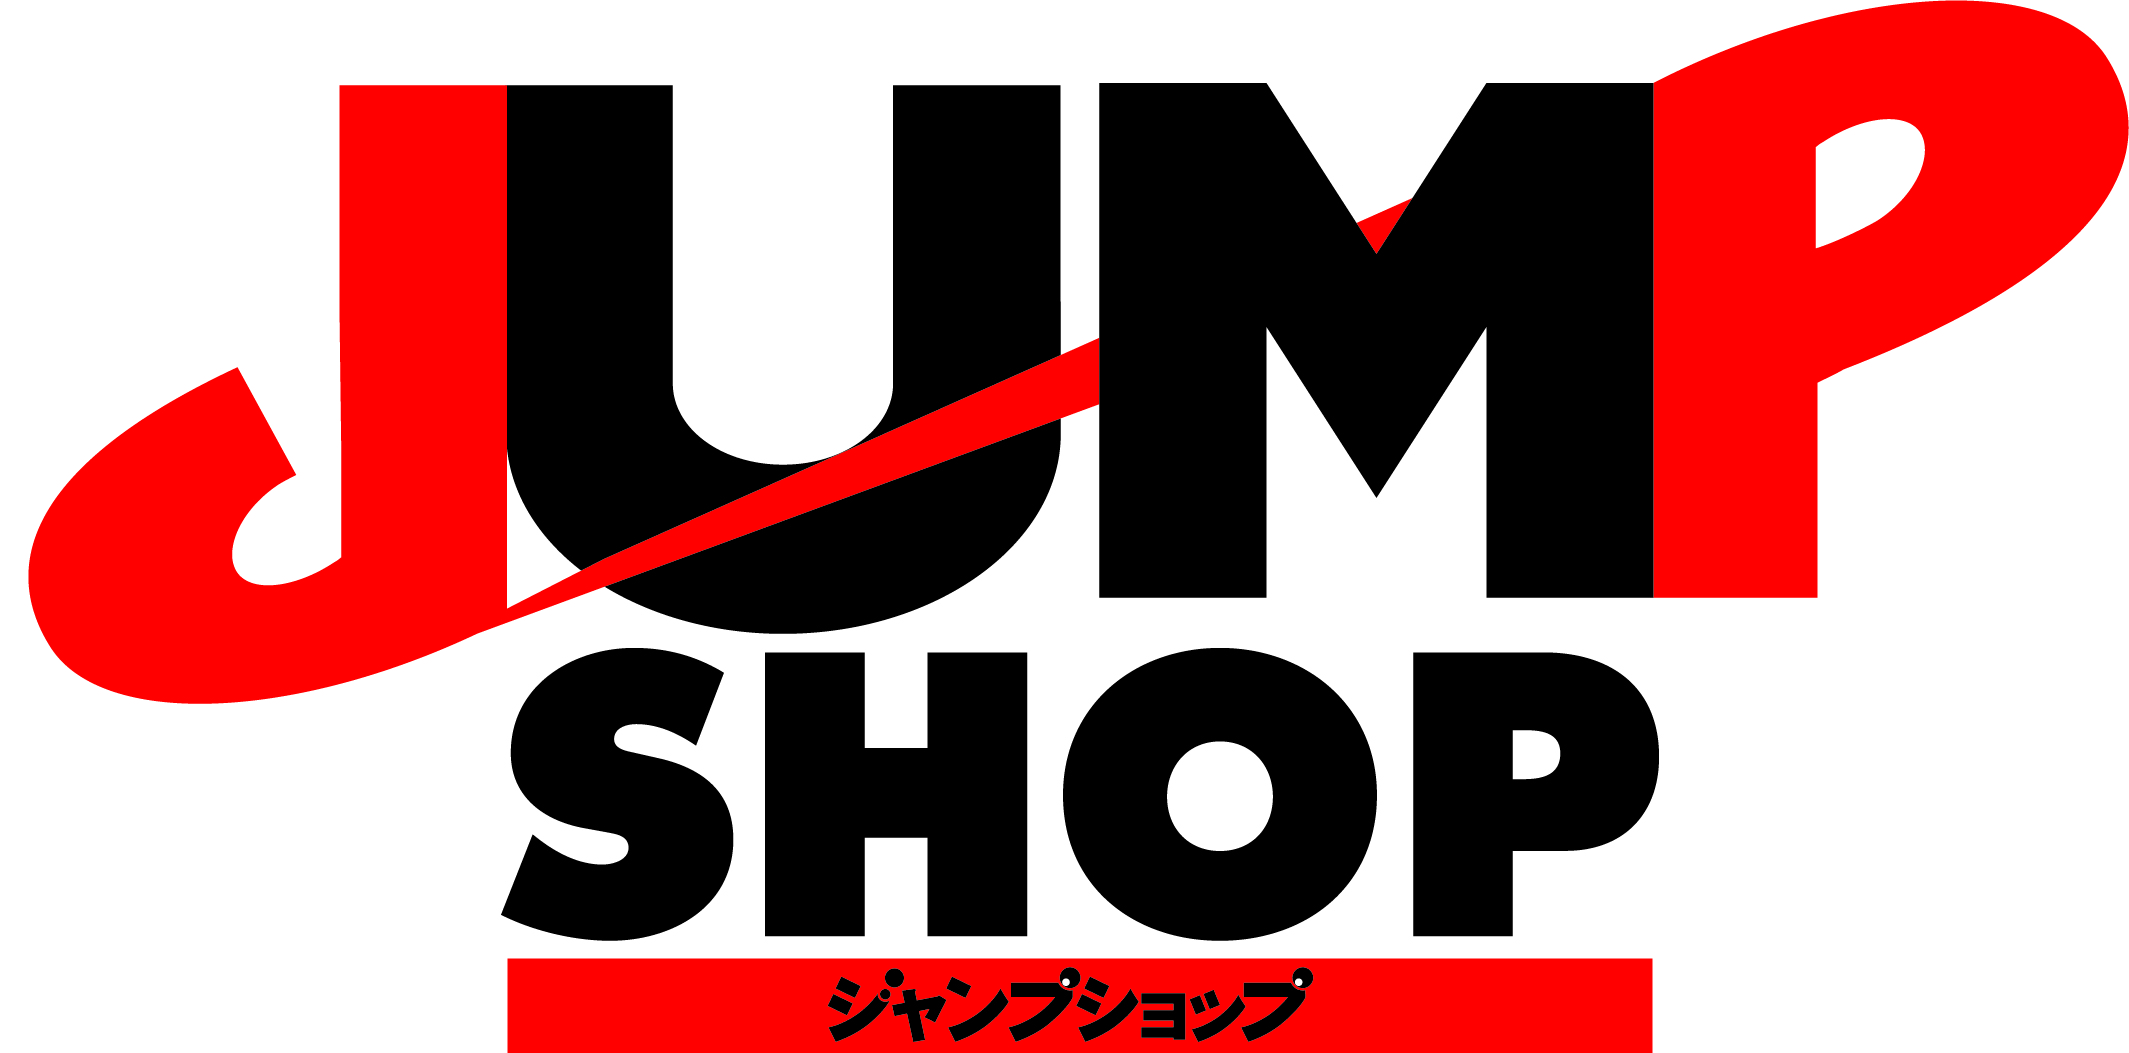 3 30 月 入店分 期間限定 鬼滅の刃 グッズショップin Jump Shop東京 アクアシティお台場 店のチケット情報 予約 購入 販売 ライヴポケット